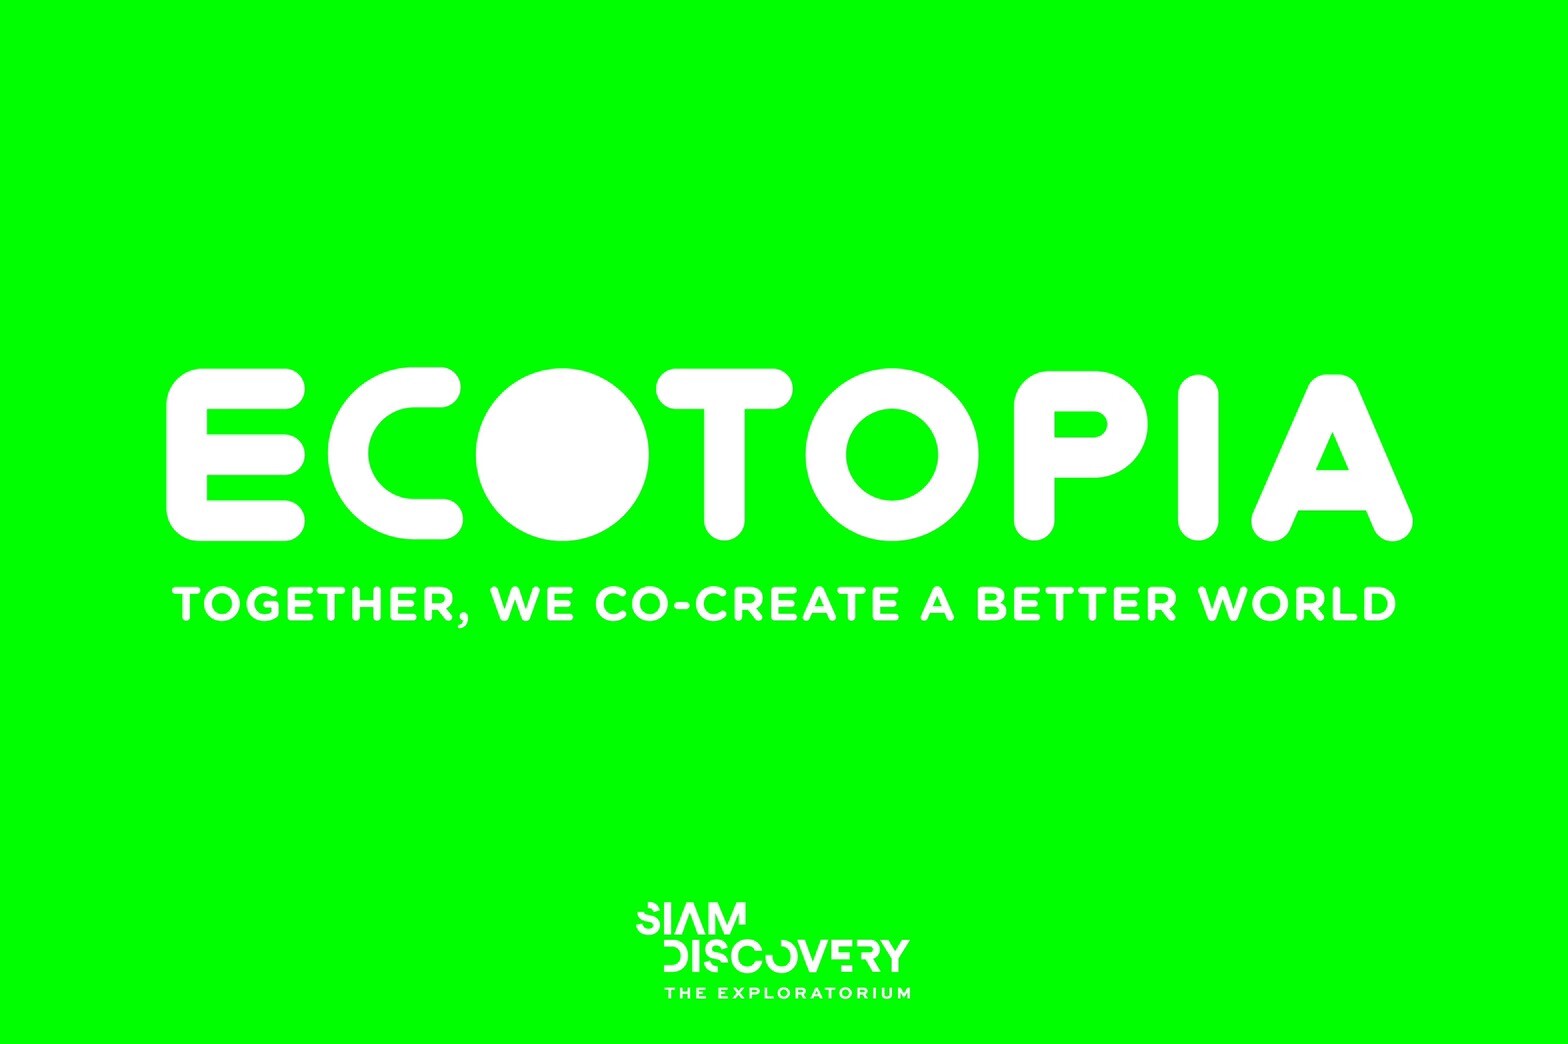 สยามดิสคัฟเวอรี่ ดิเอ็กซ์พลอราทอเรียม ขอเชิญร่วมสร้างปรากฎการณ์รักษ์โลกไปด้วยกัน กับงาน Grand Opening “Ecotopia”